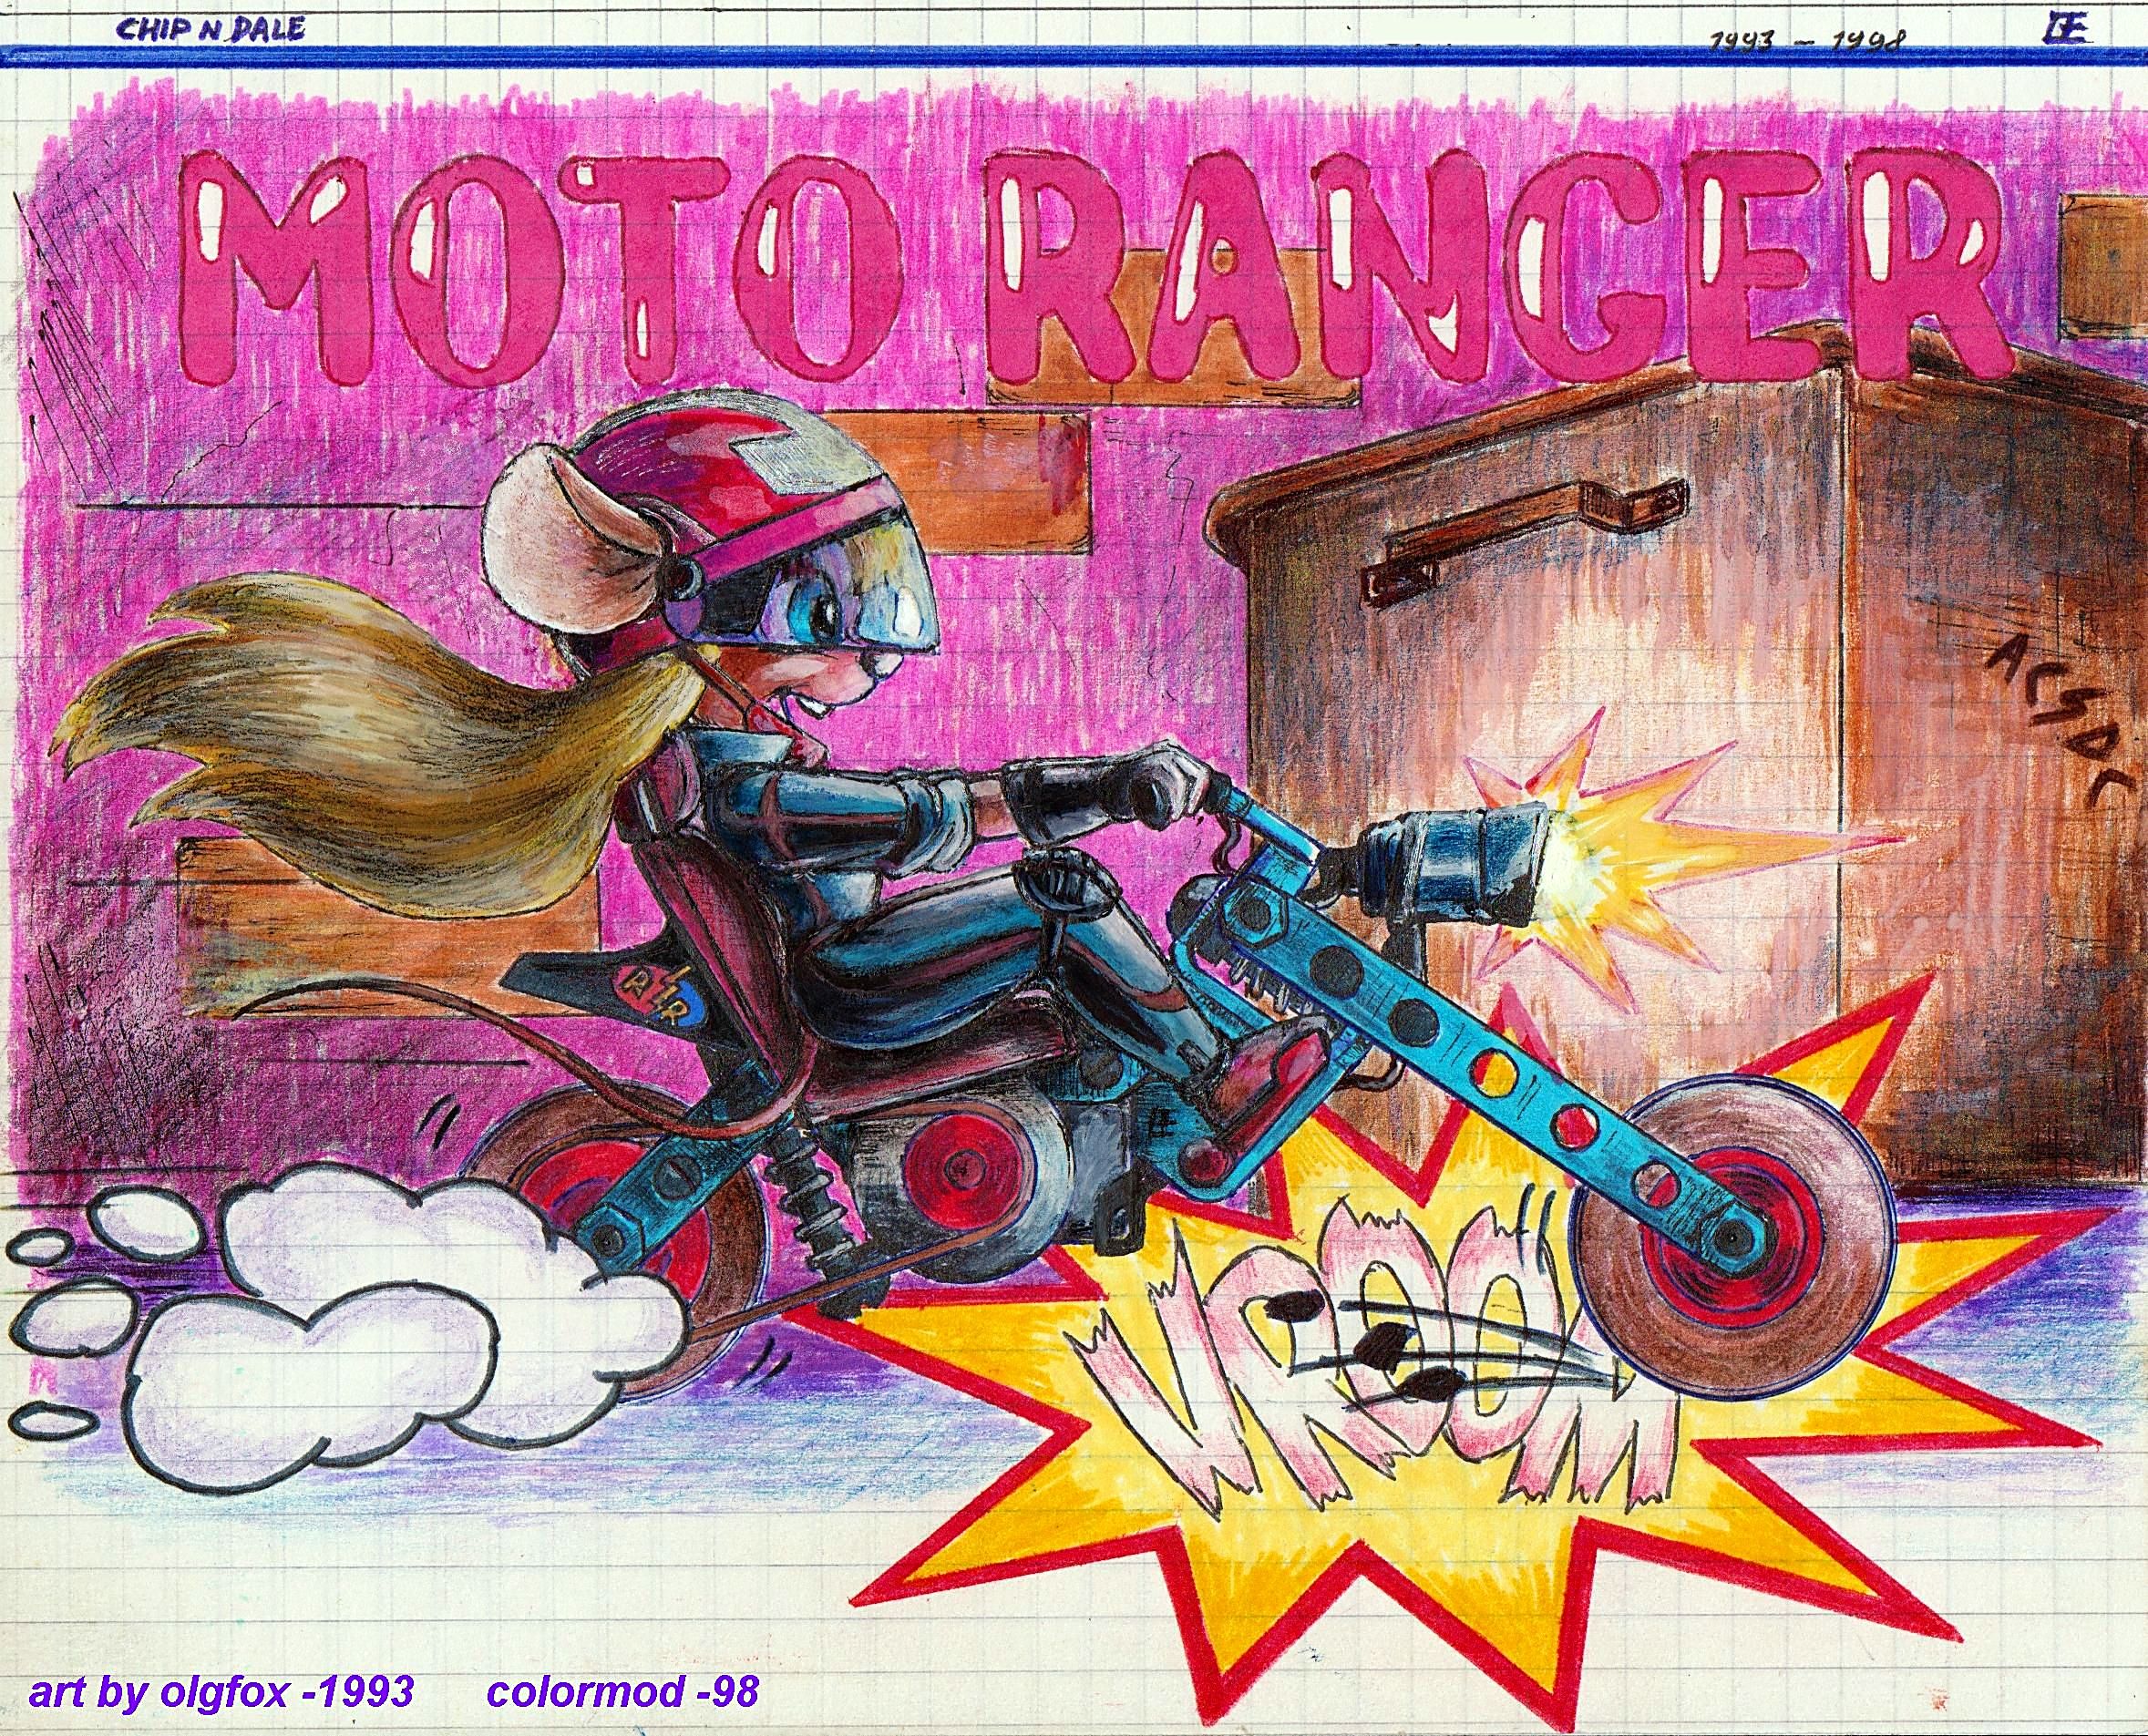 Moto Ranger Gadget by olgfox-1993.jpg